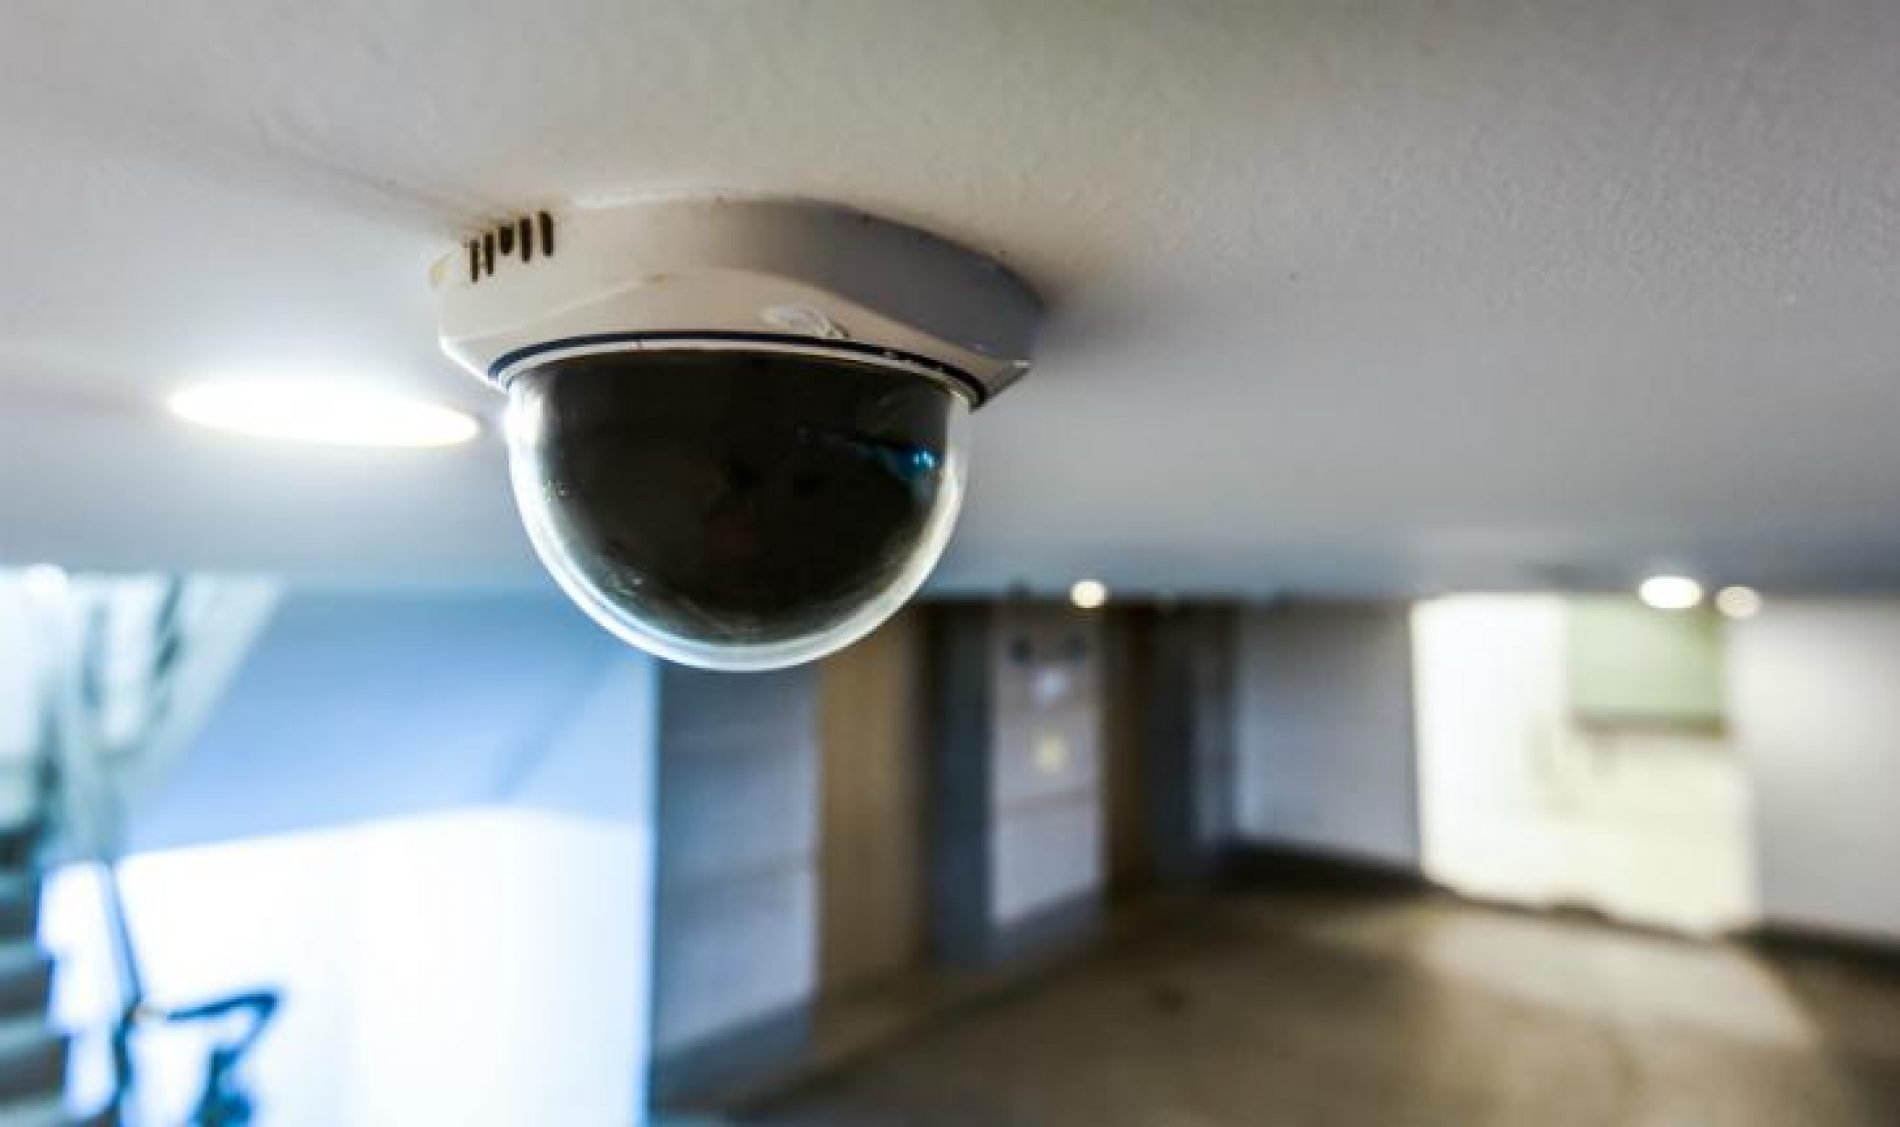 BARRETOS: Prefeitura implanta câmeras de monitoramento em escolas e cemeis